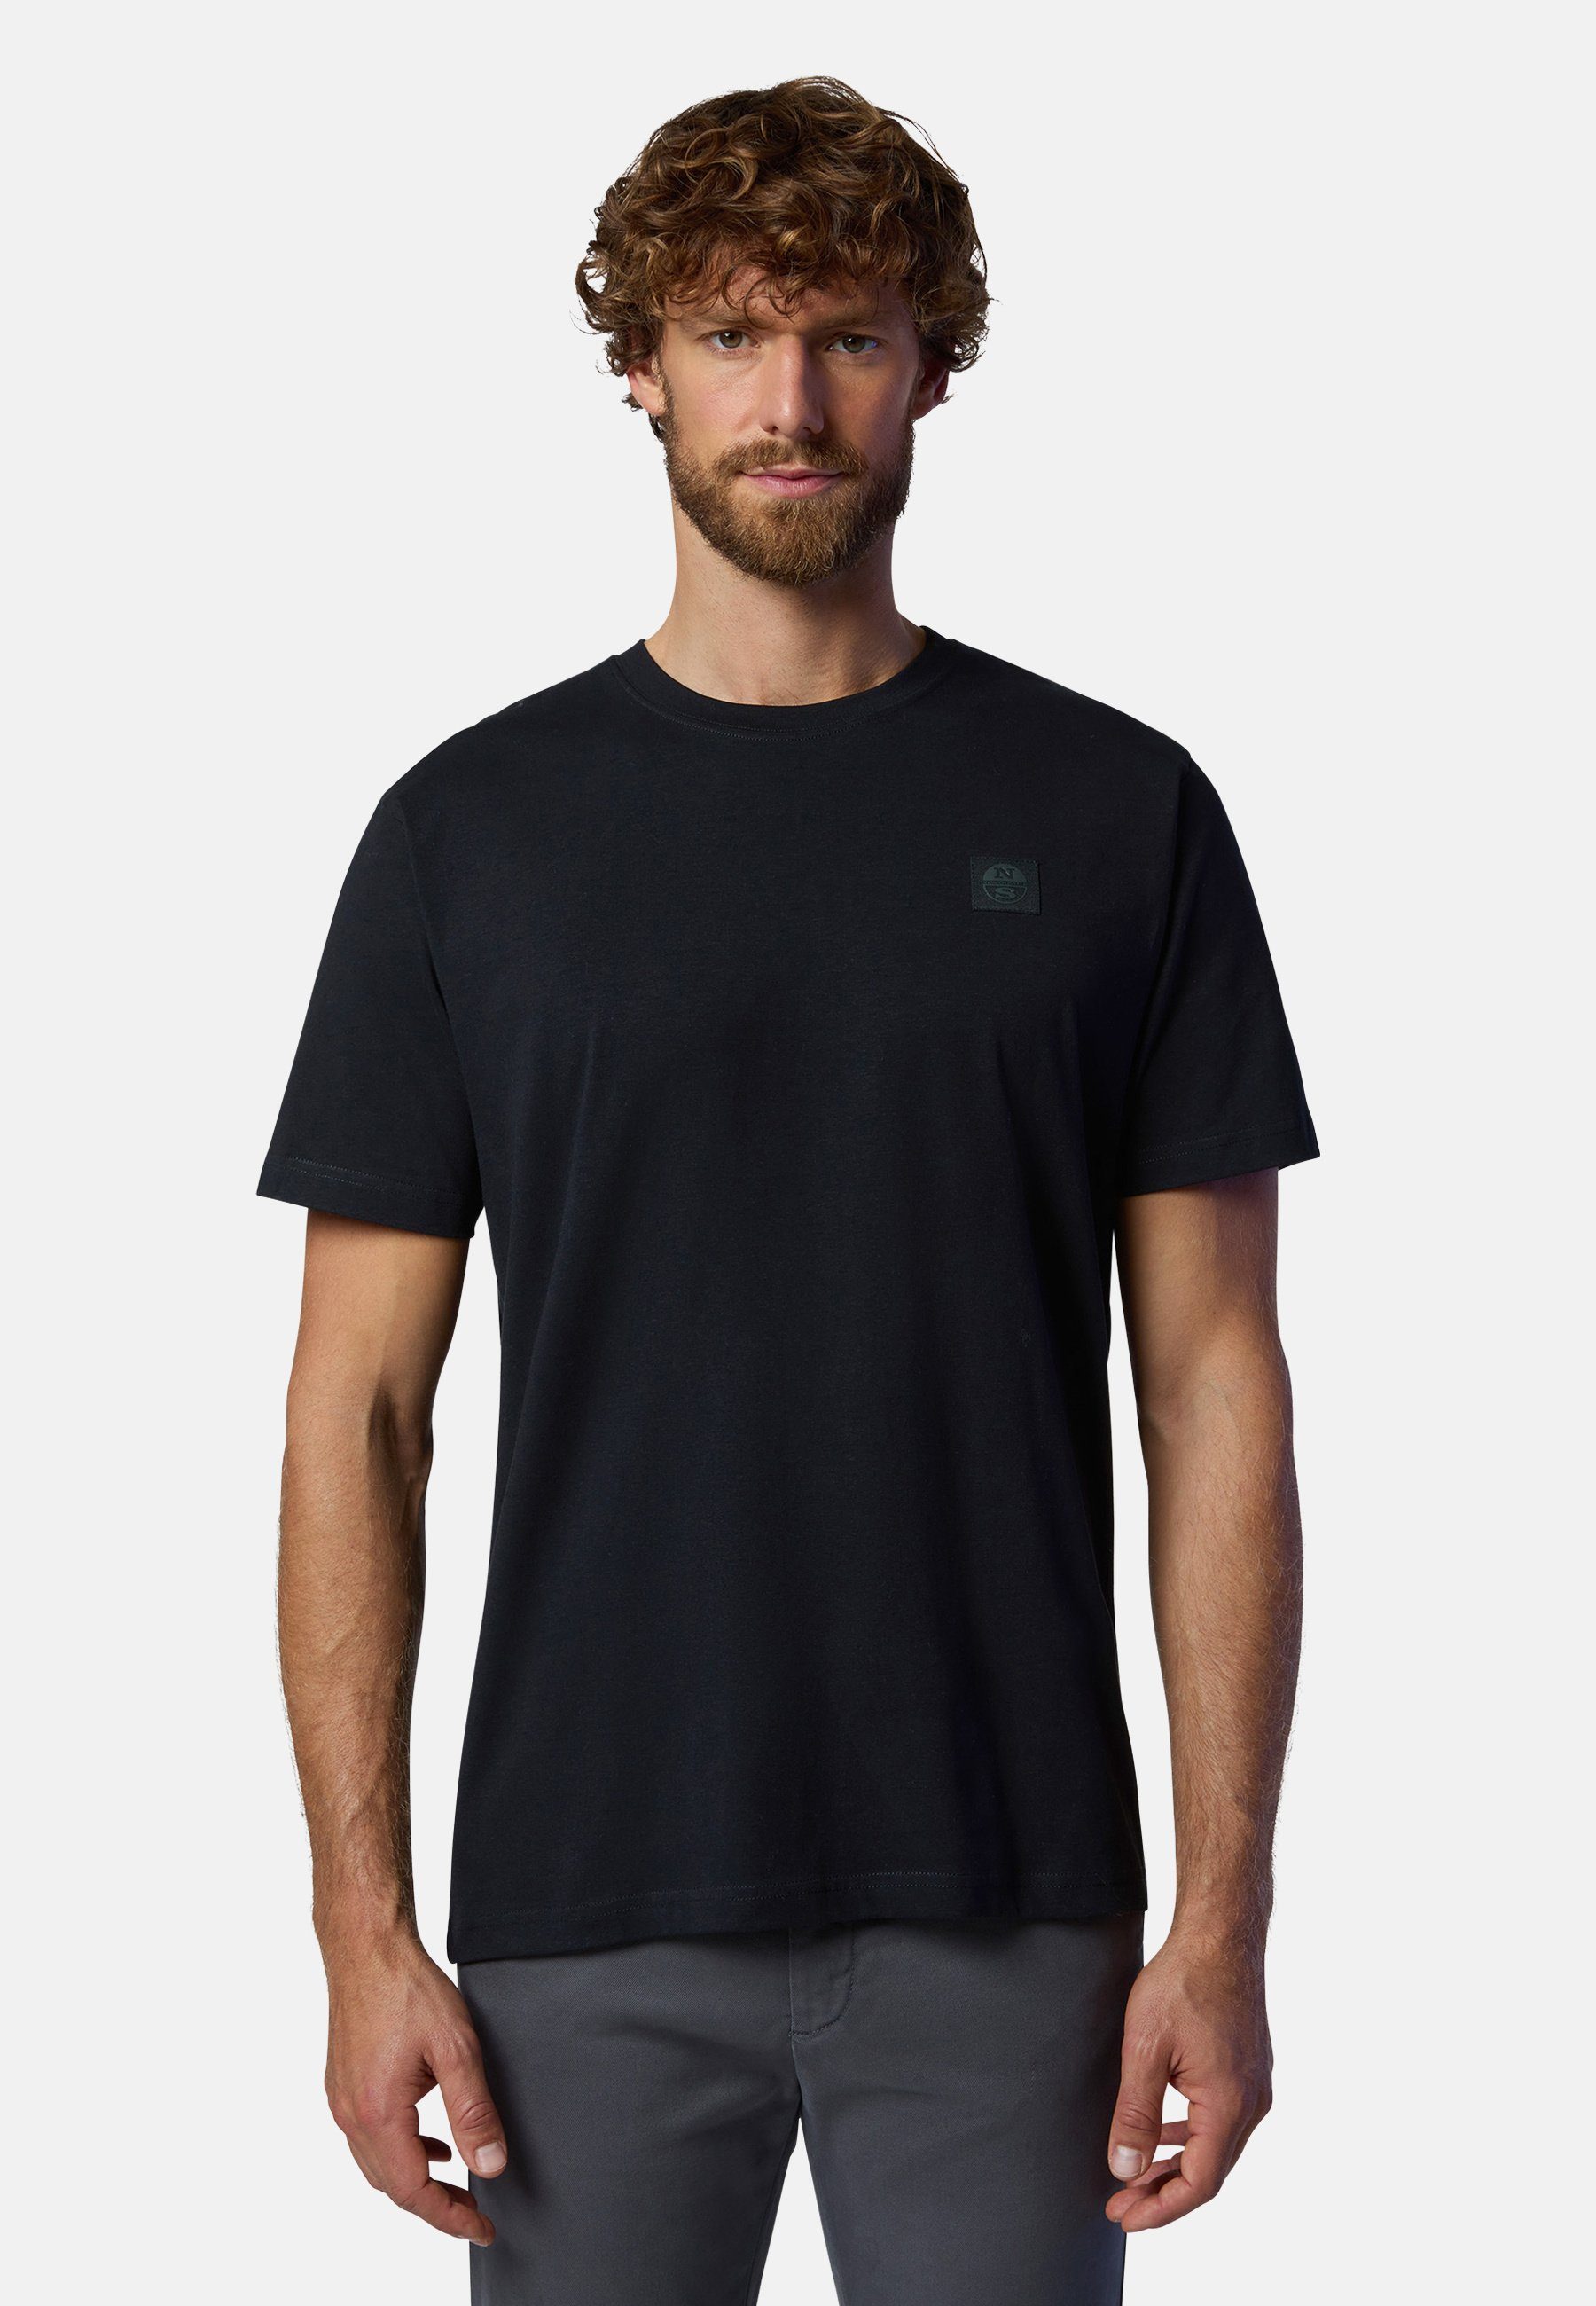 klassischem T-Shirt BLACK Logo-Aufnäher MILKY North T-Shirt mit Sails Design mit